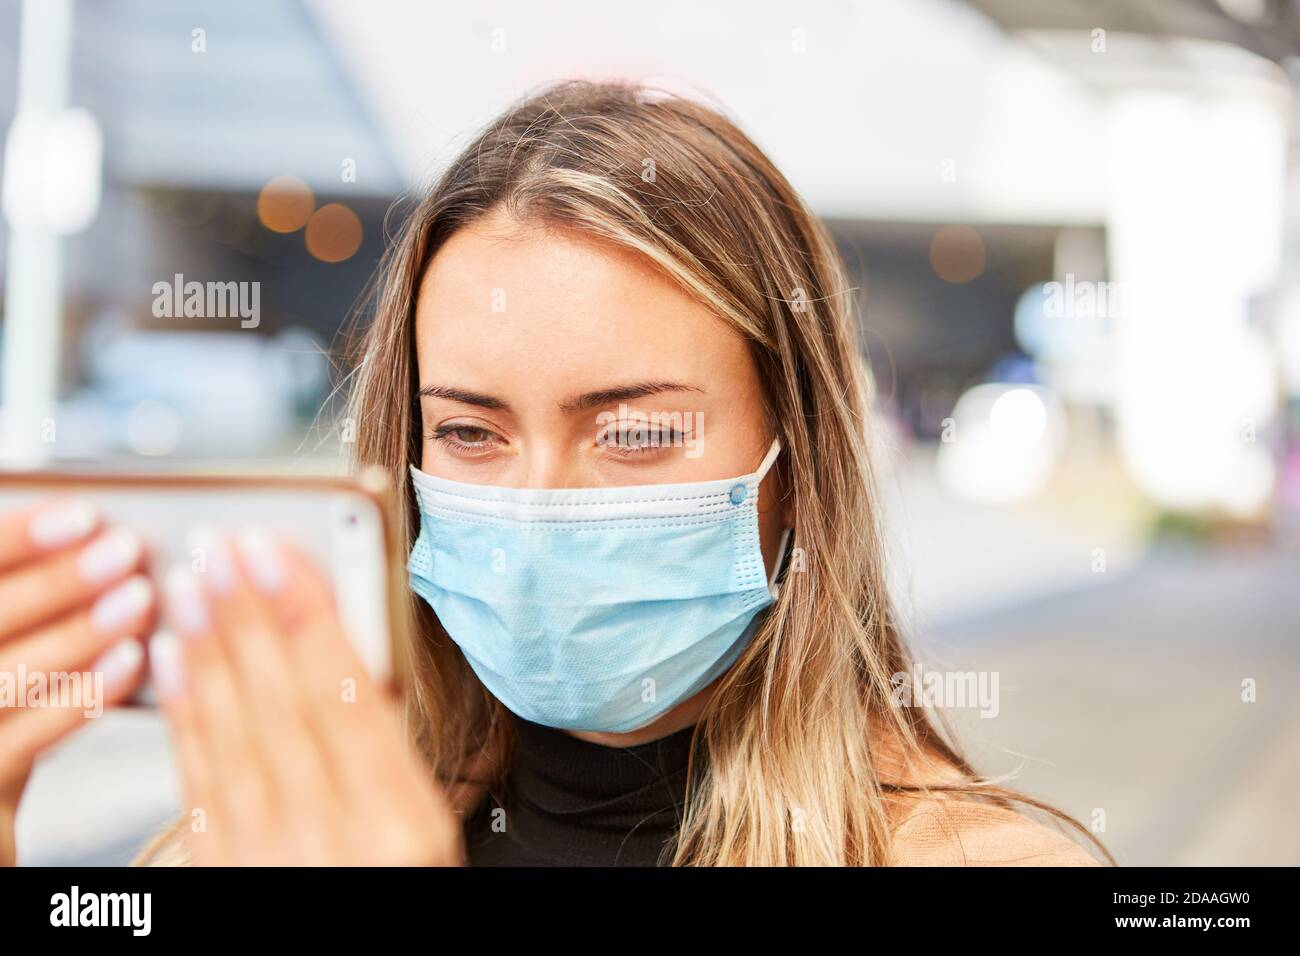 Ein Passant oder Tourist mit einer Gesichtsmaske nimmt ein Selfie während der Covid-19 Pandemie Stockfoto